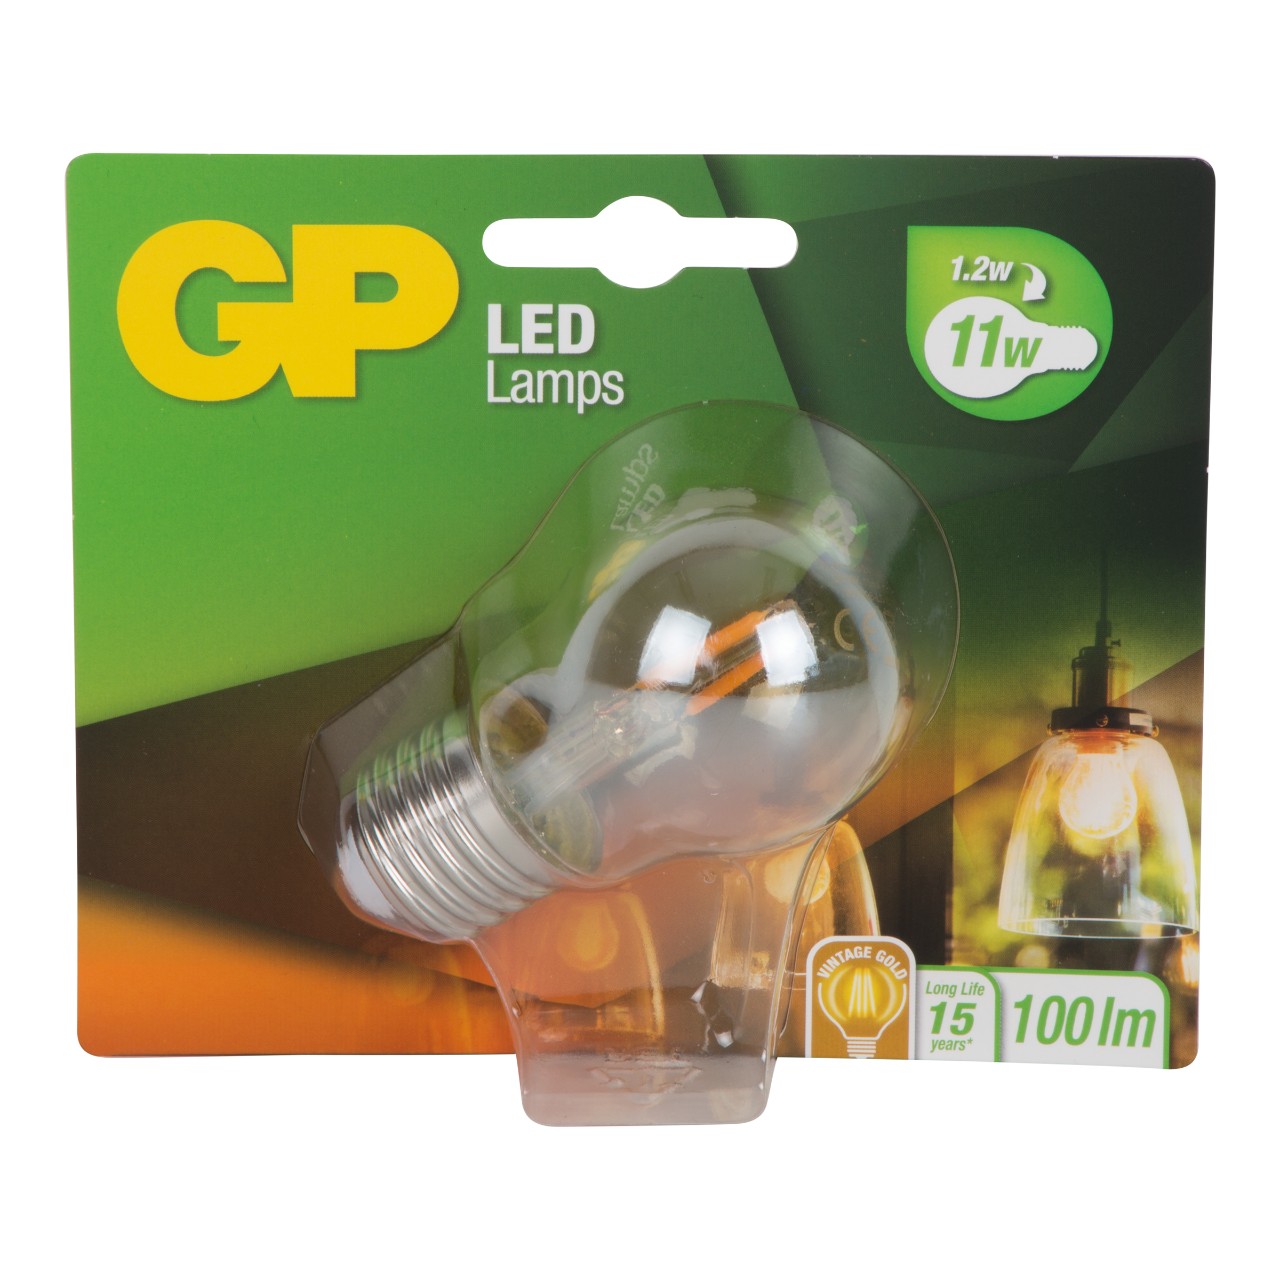 Panorama Continent Sympathiek GP LED lamp mini globe 1.2-11 watt E27 gold Per stuk | Sligro.nl